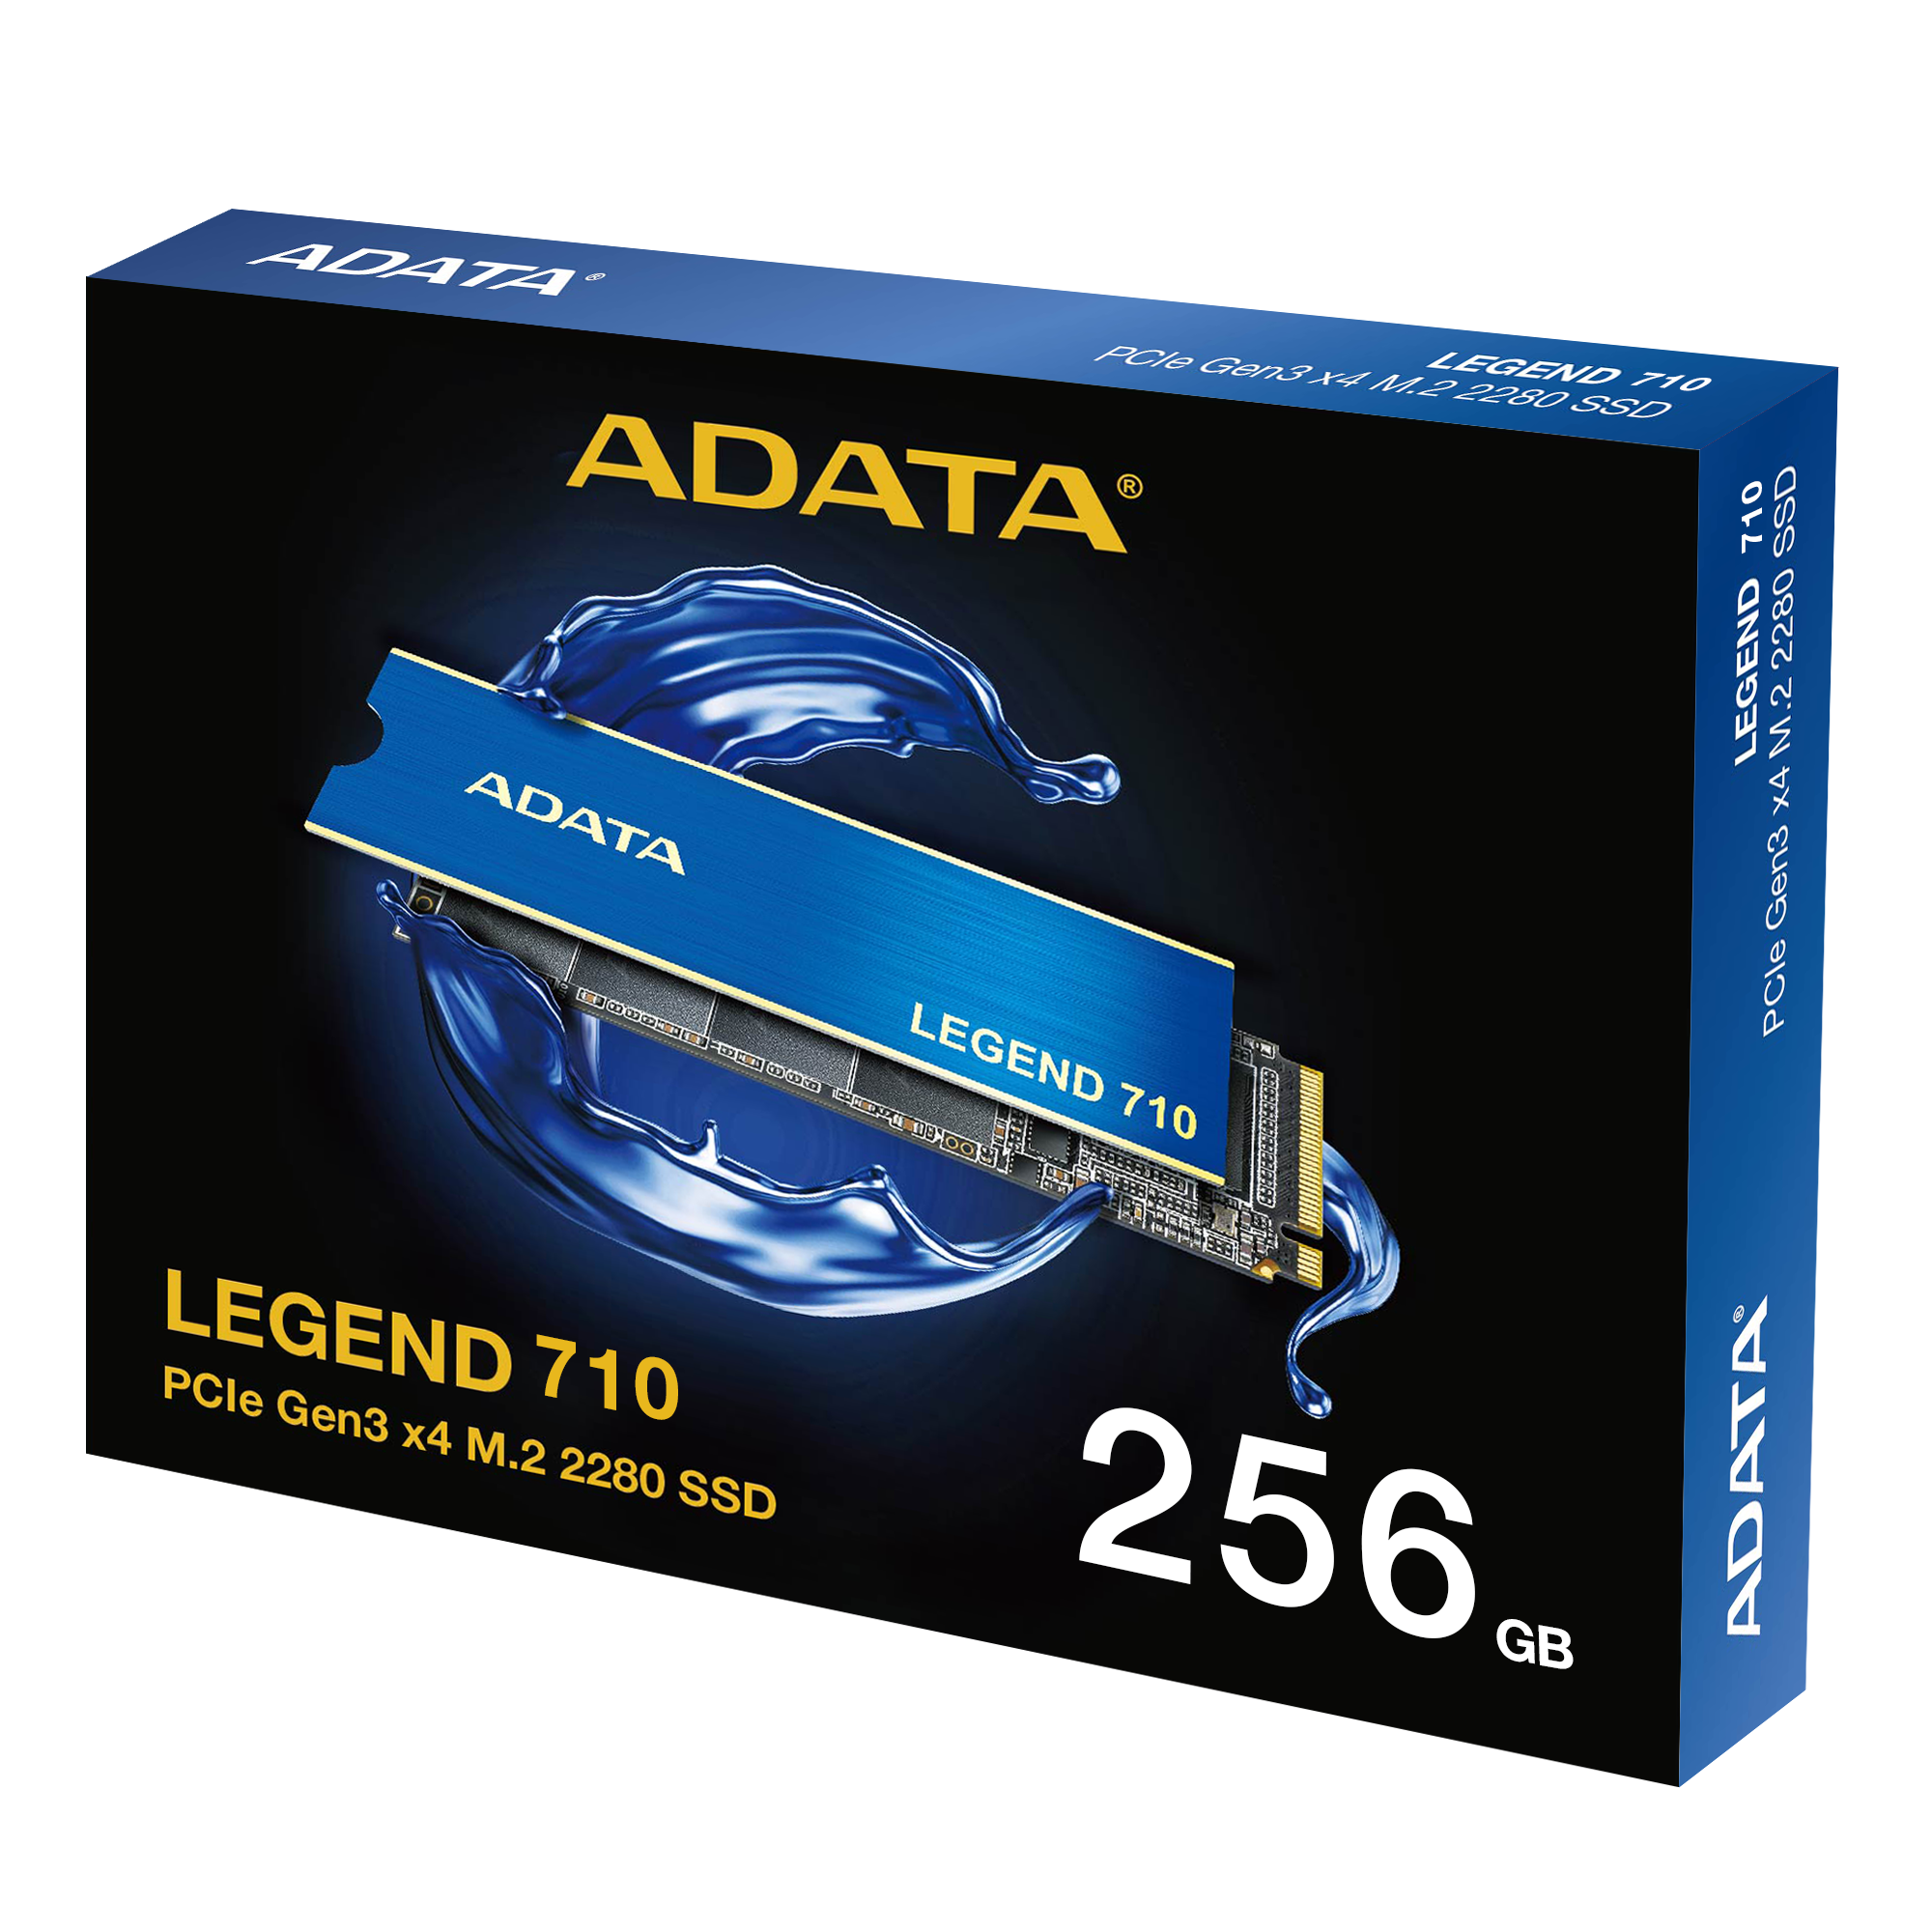 ADATA LEGEND 710 512GB | PCIe Gen3 x4 M.2 SSD